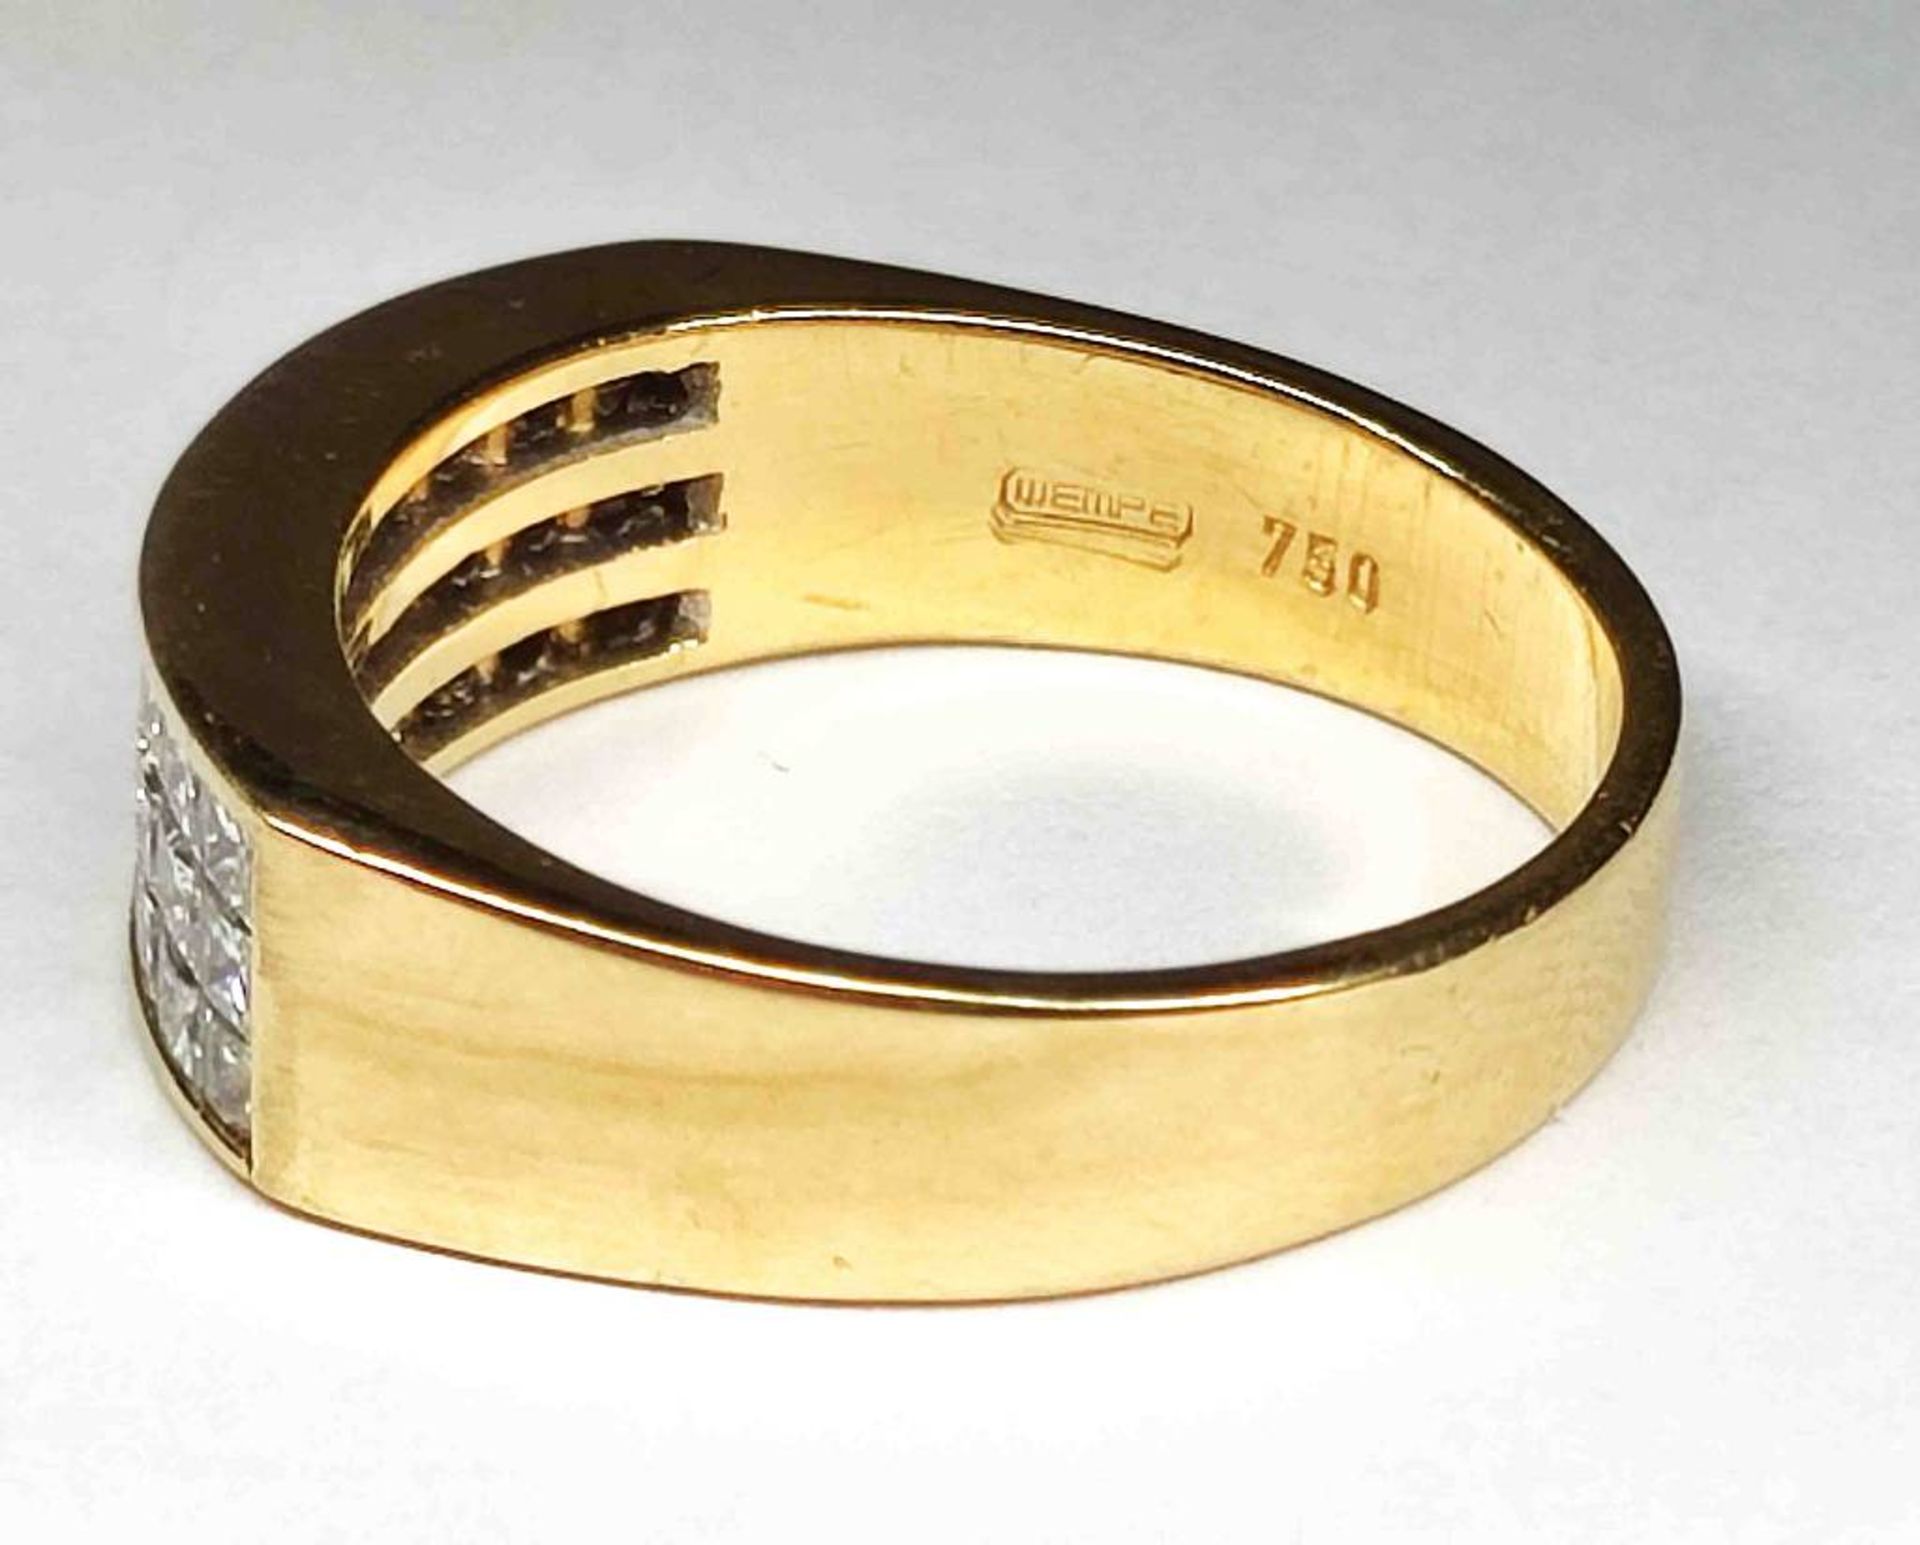 750er 18K Wempe GG Gold Ring - Image 2 of 2